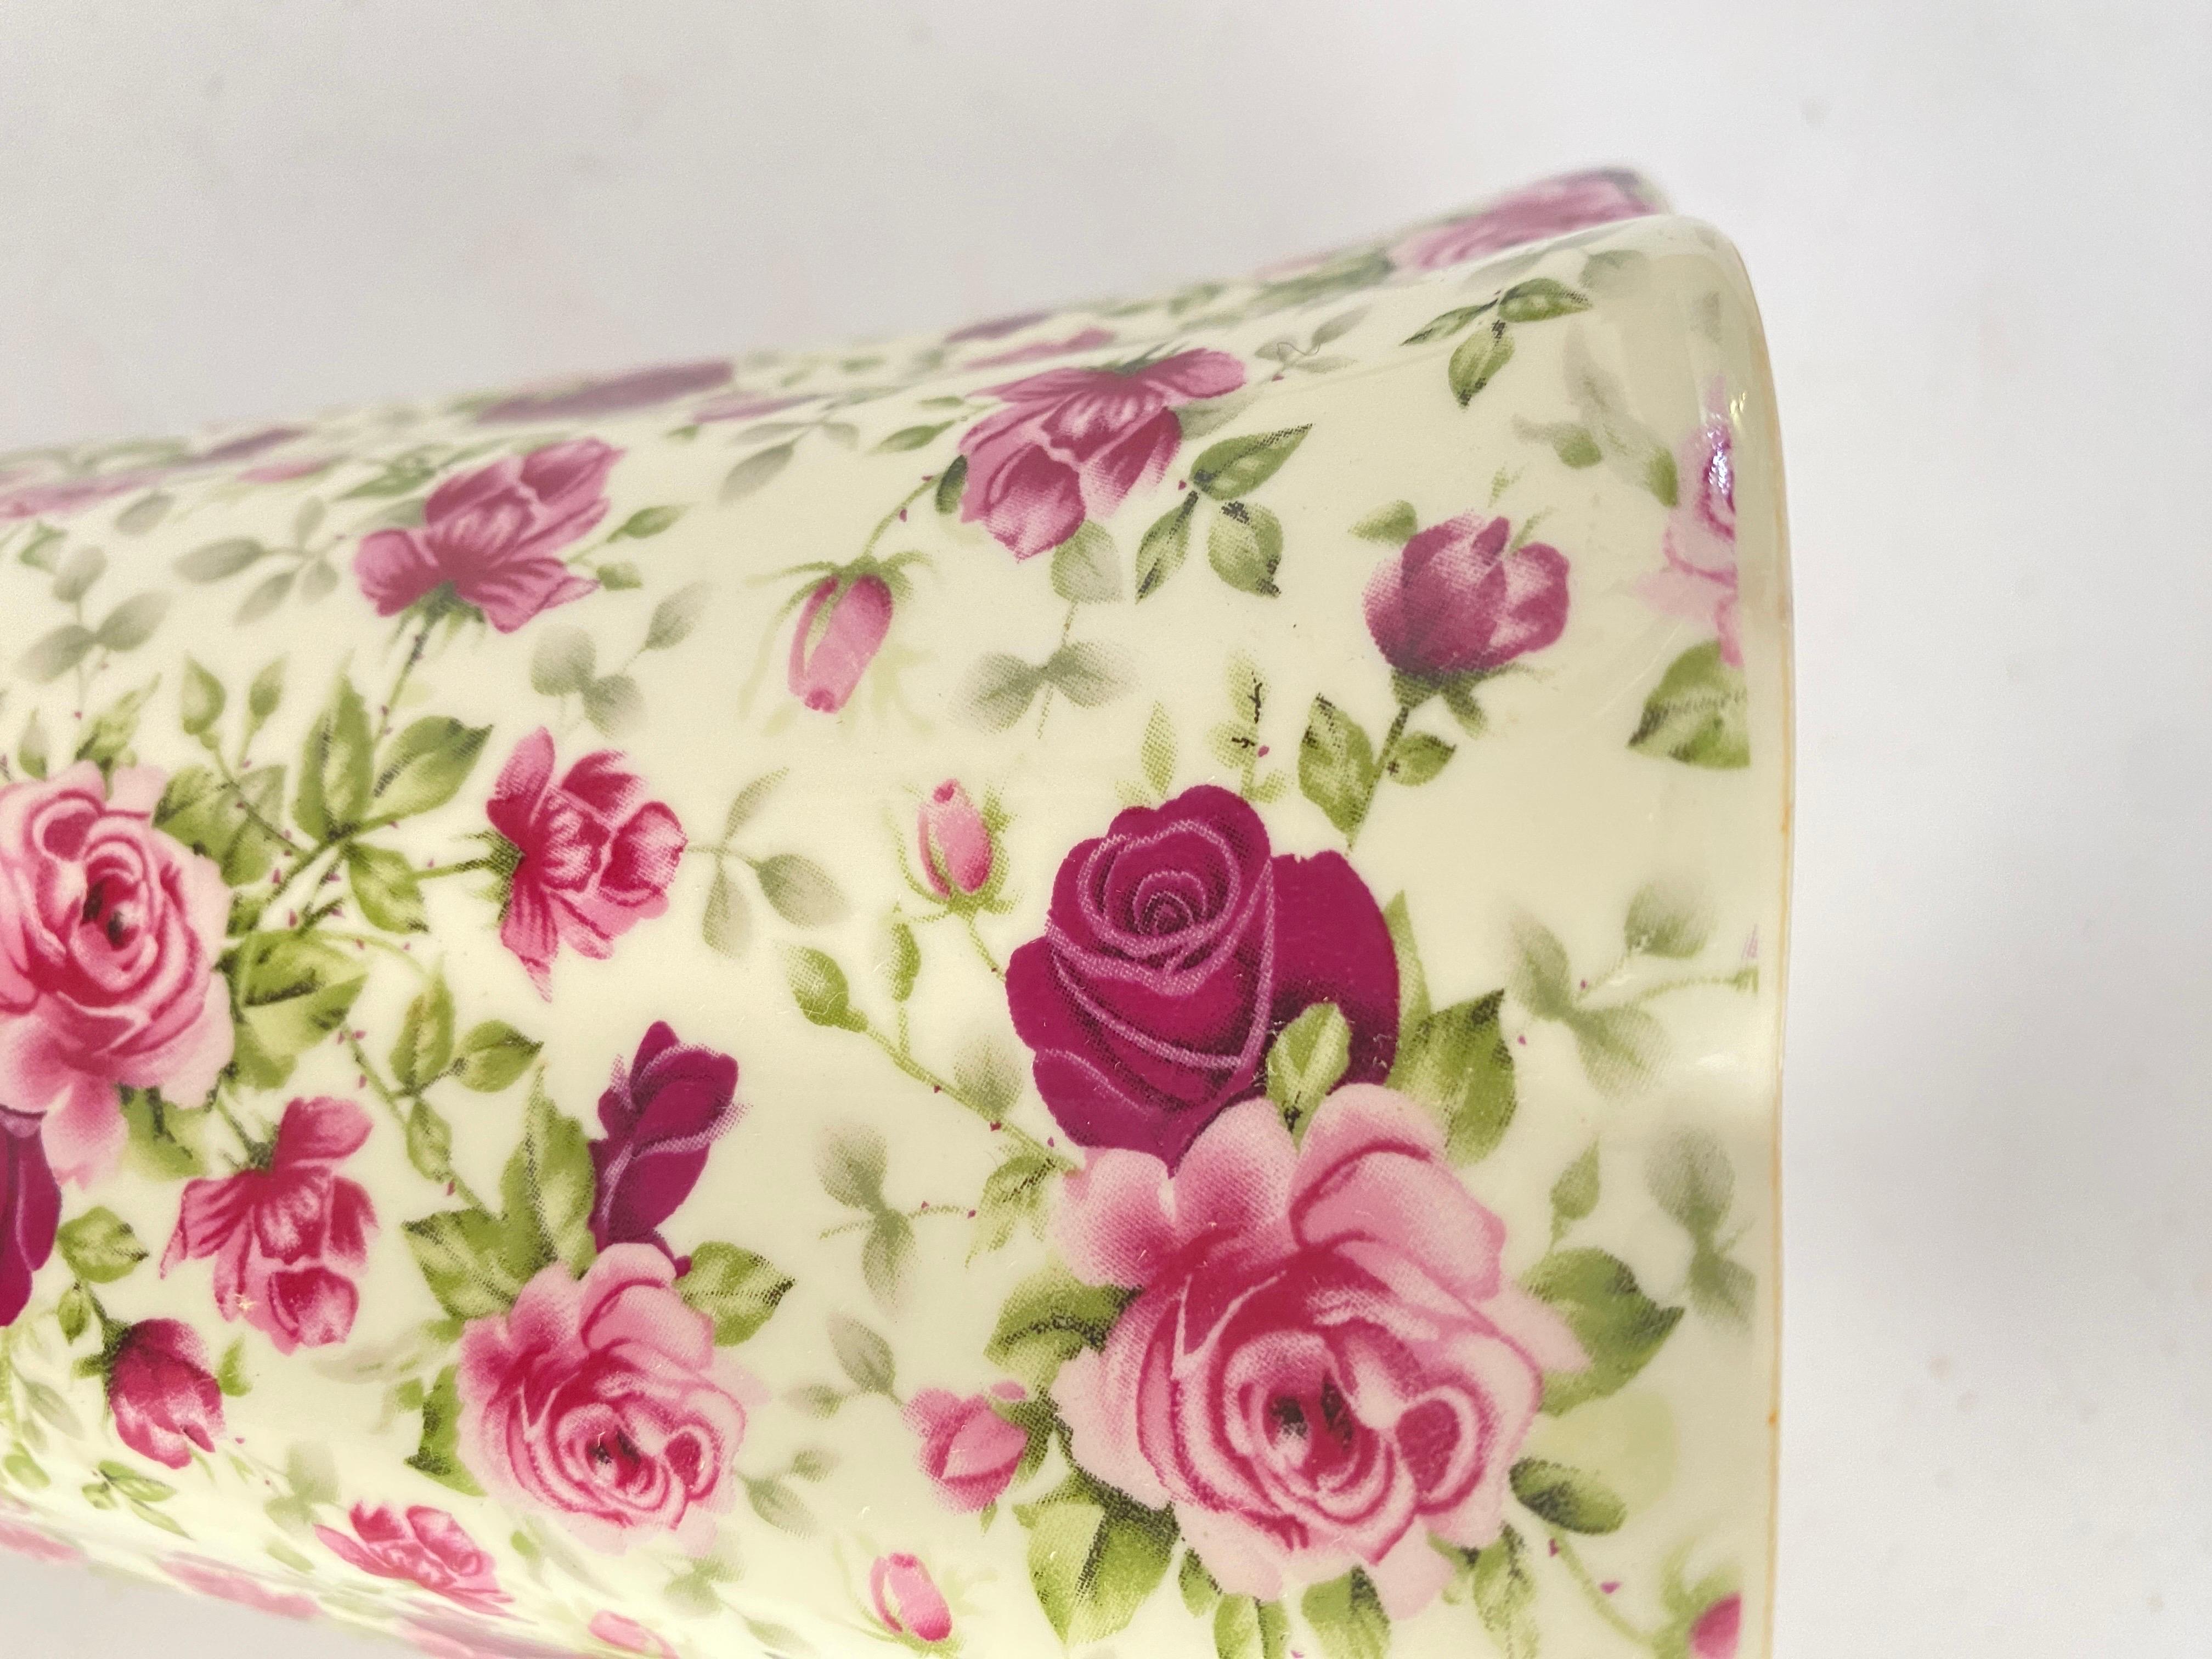 Es ist ein bemalter Keramikkrug in der Farbe Rosa. Es wurde im 20. Jahrhundert in England hergestellt. Er steht für Rosen.